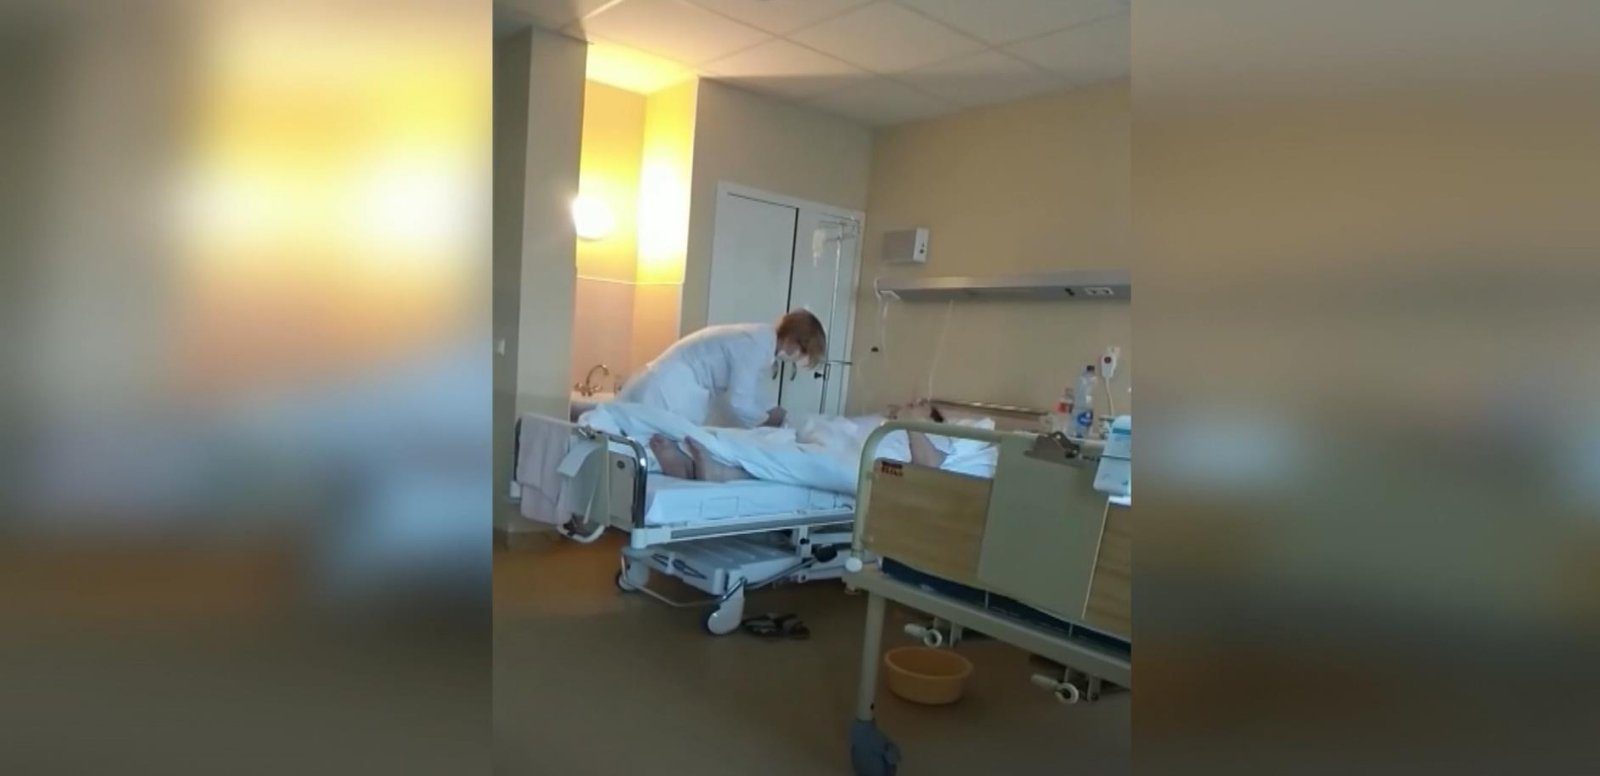 Internete žaibišku greičiu pasklidusiame vaizdo įraše – šokiruojantis slaugytojos pokalbis su garbaus amžiaus paciente